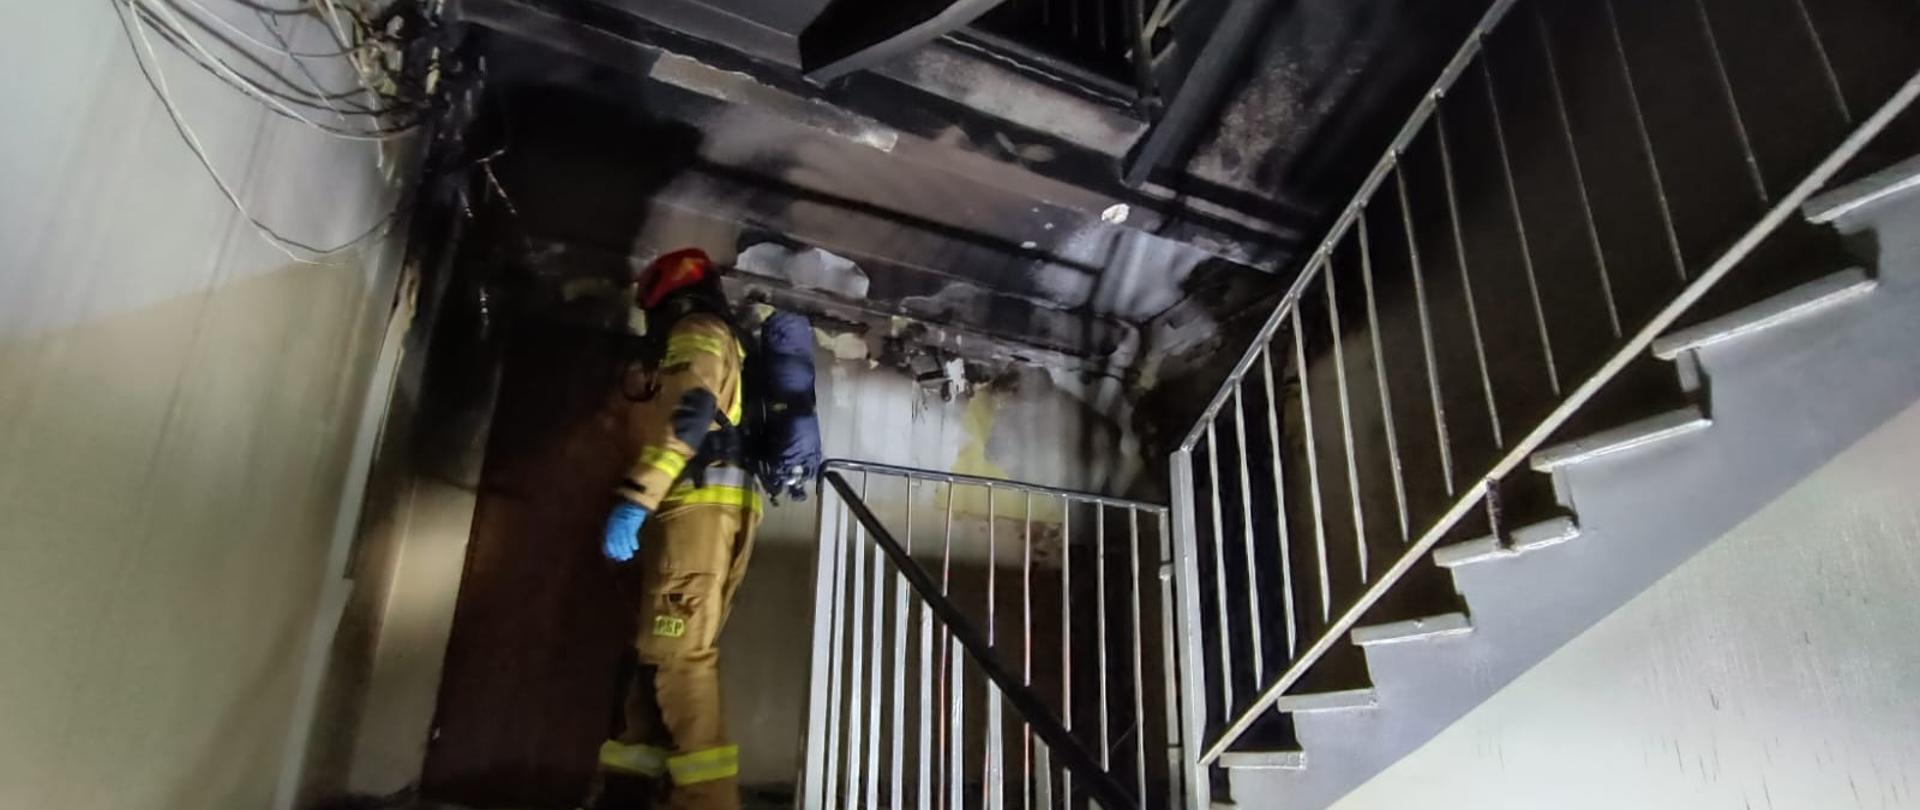 Strażak w pełnym umundurowaniu i aparacie ochrony układu oddechowego dokonuje inspekcji po pożarze na klatce schodowej.